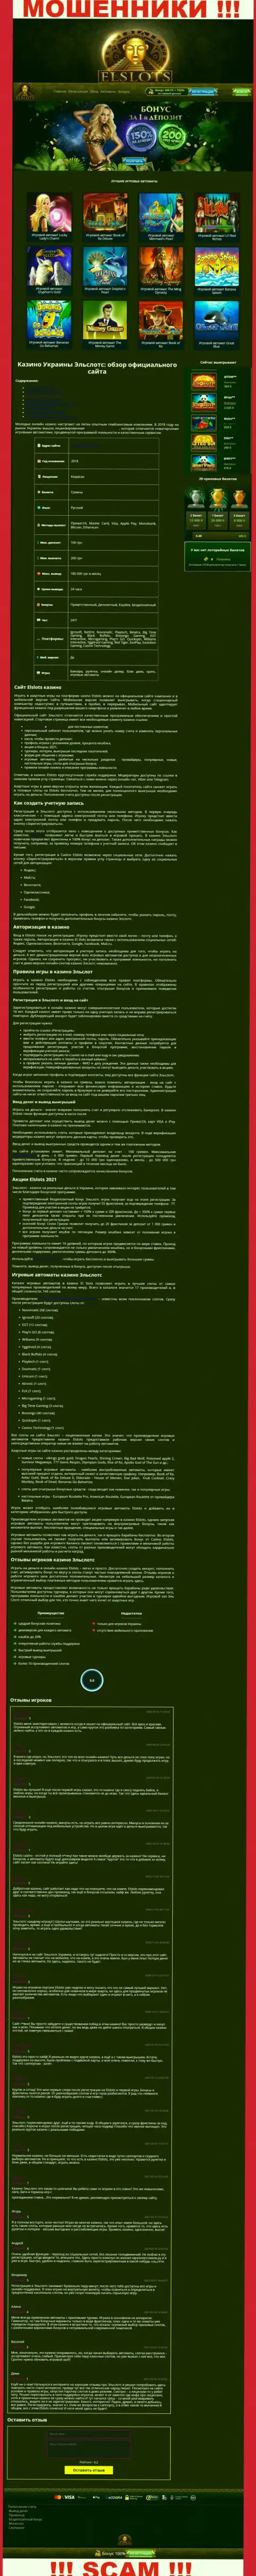 Внешний вид официальной web-страницы мошеннической организации ЕлСлотс Ком